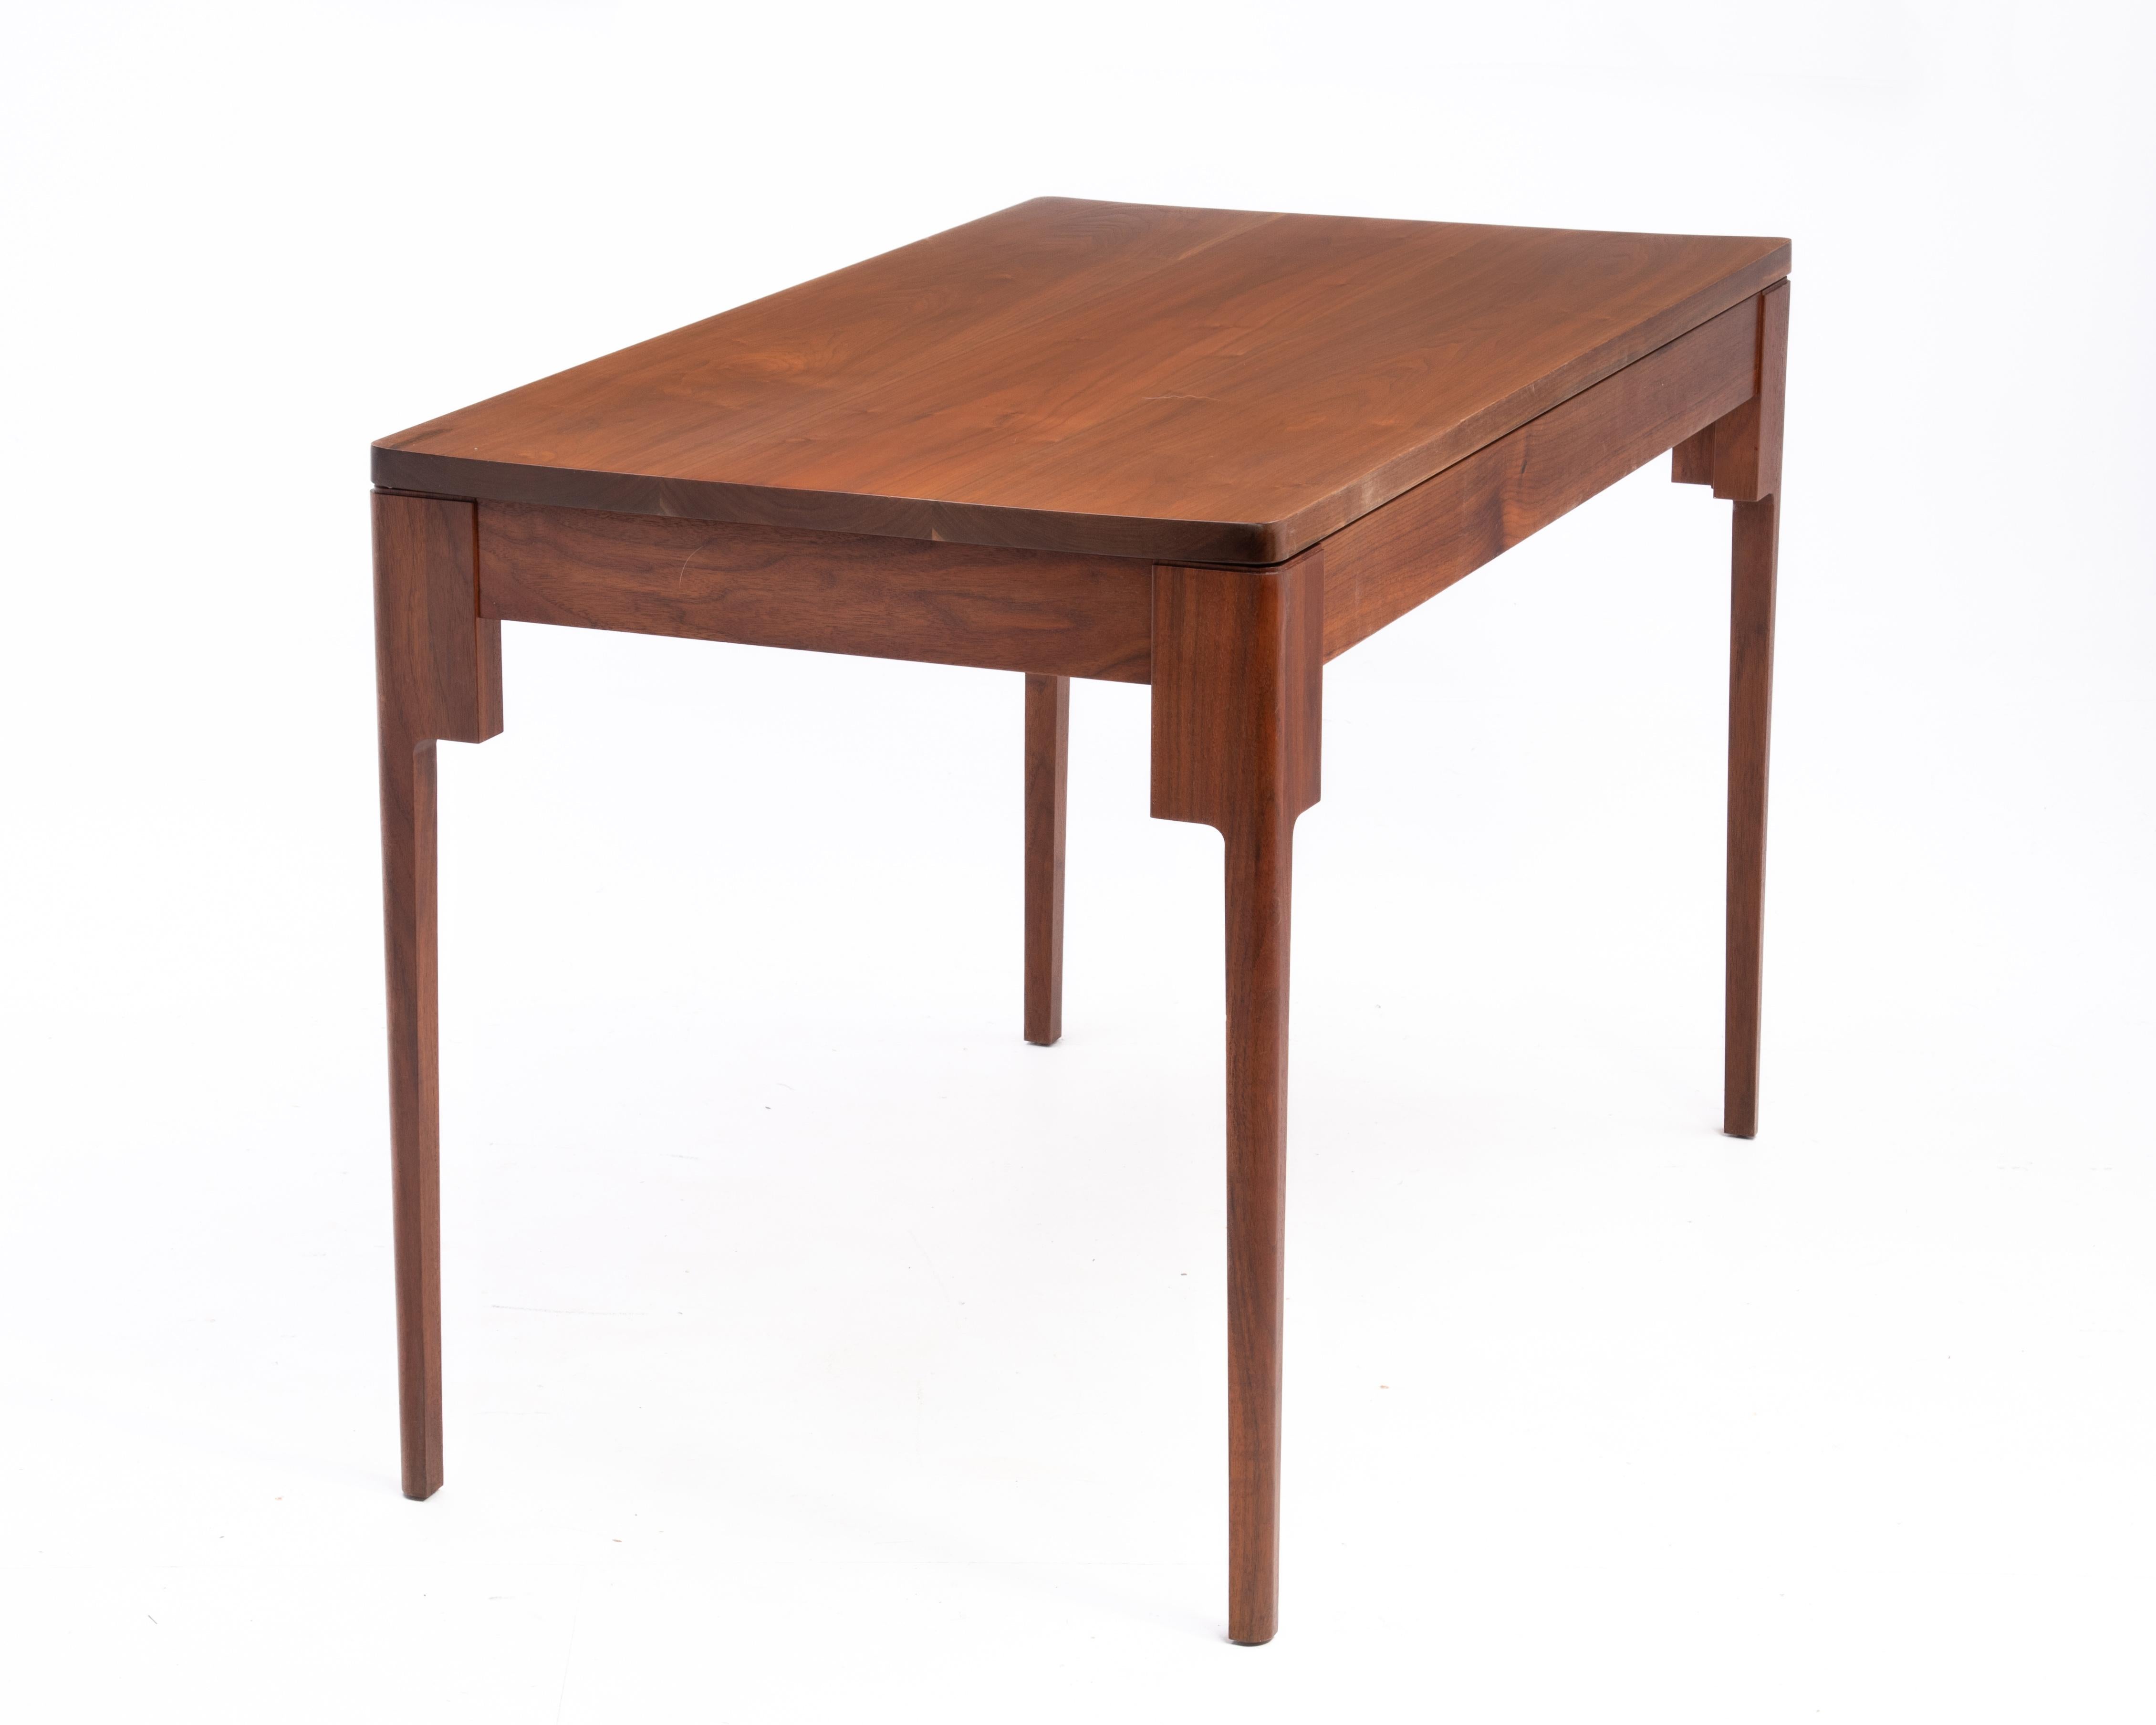 Ein einzigartiger Schreibtisch aus Nussbaumholz, der groß genug ist, um auch als Esstisch für vier Personen zu dienen. Das Möbelstück ist durchgehend aus massivem Nussbaumholz gefertigt, hat eine schwebende Platte und konisch zulaufende Beine. Das